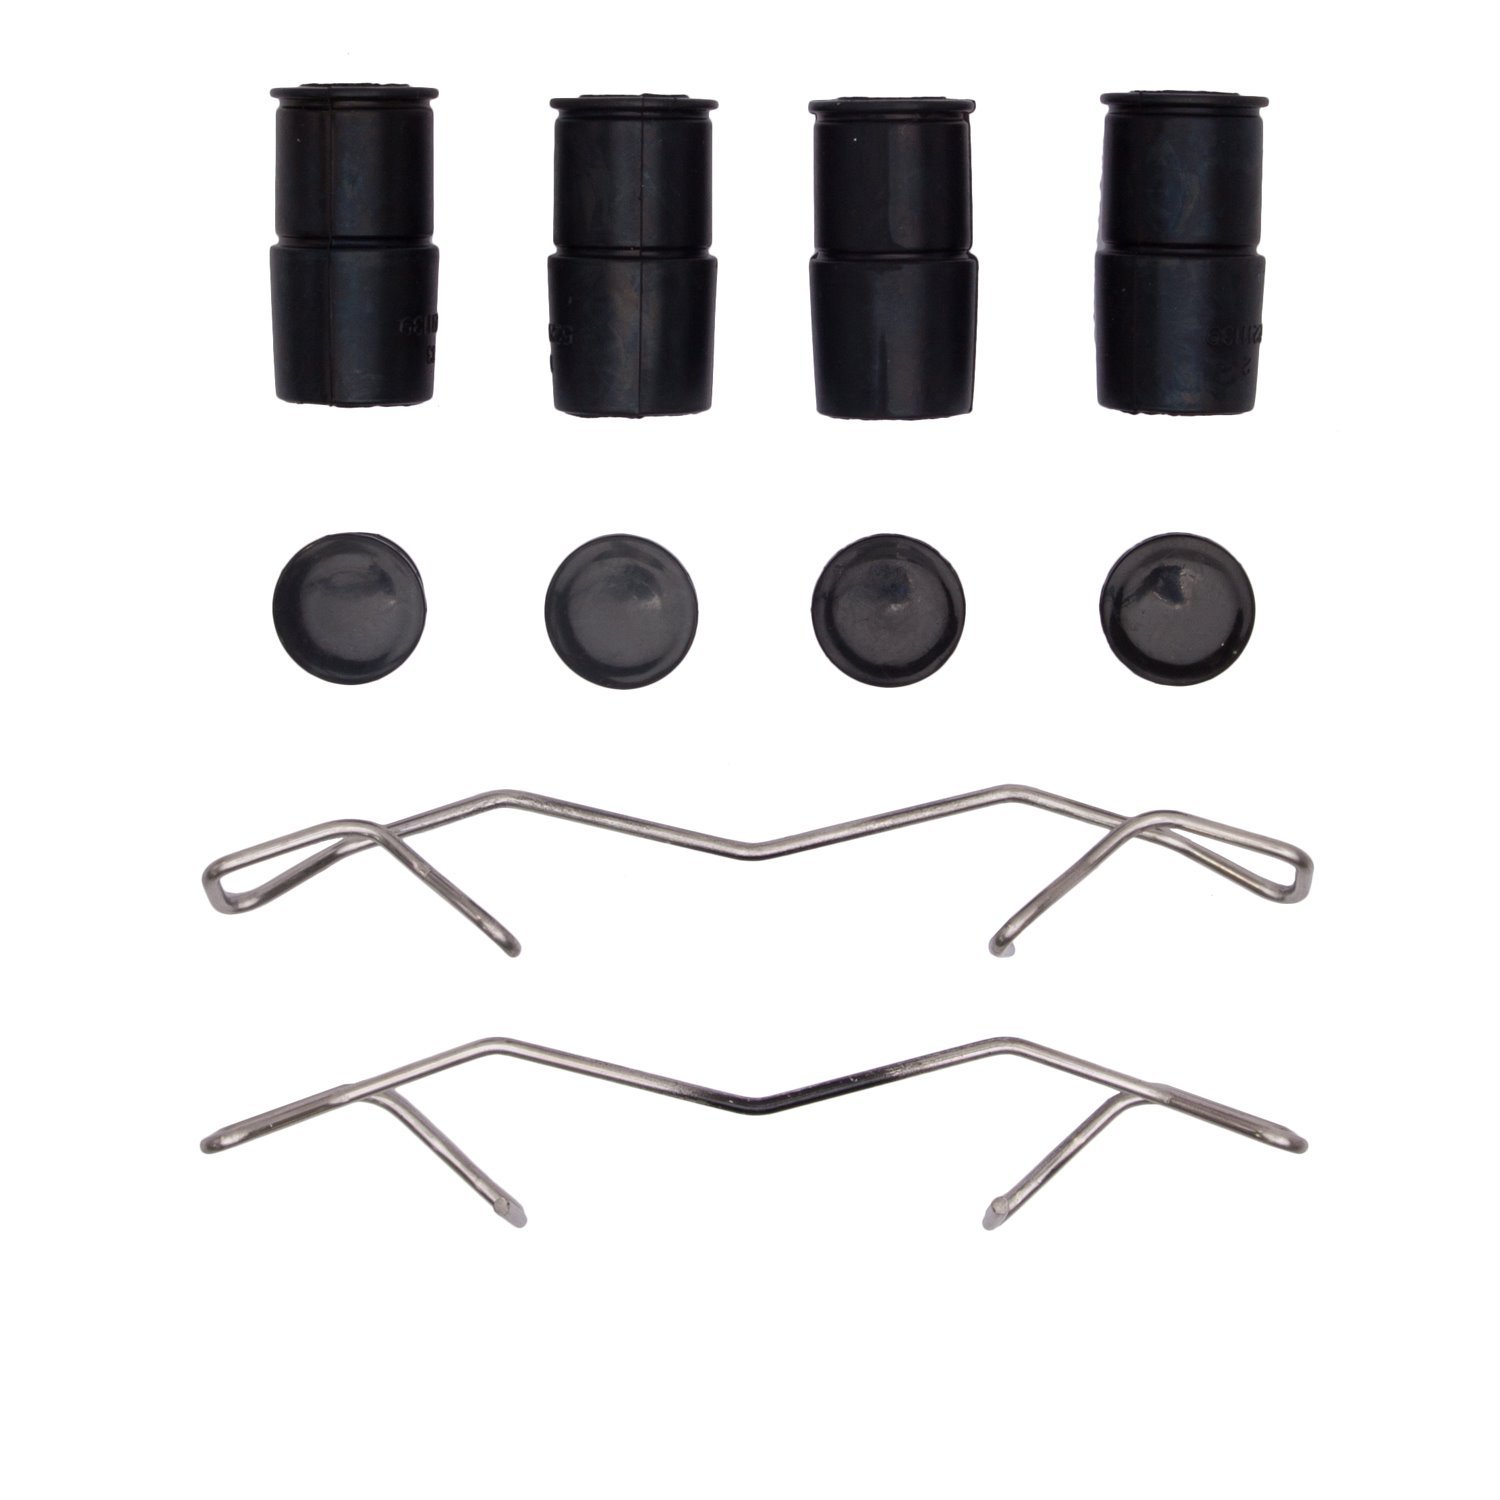 Disc Brake Hardware Kit, Fits Select Fits Multiple Makes/Models, Position: Front